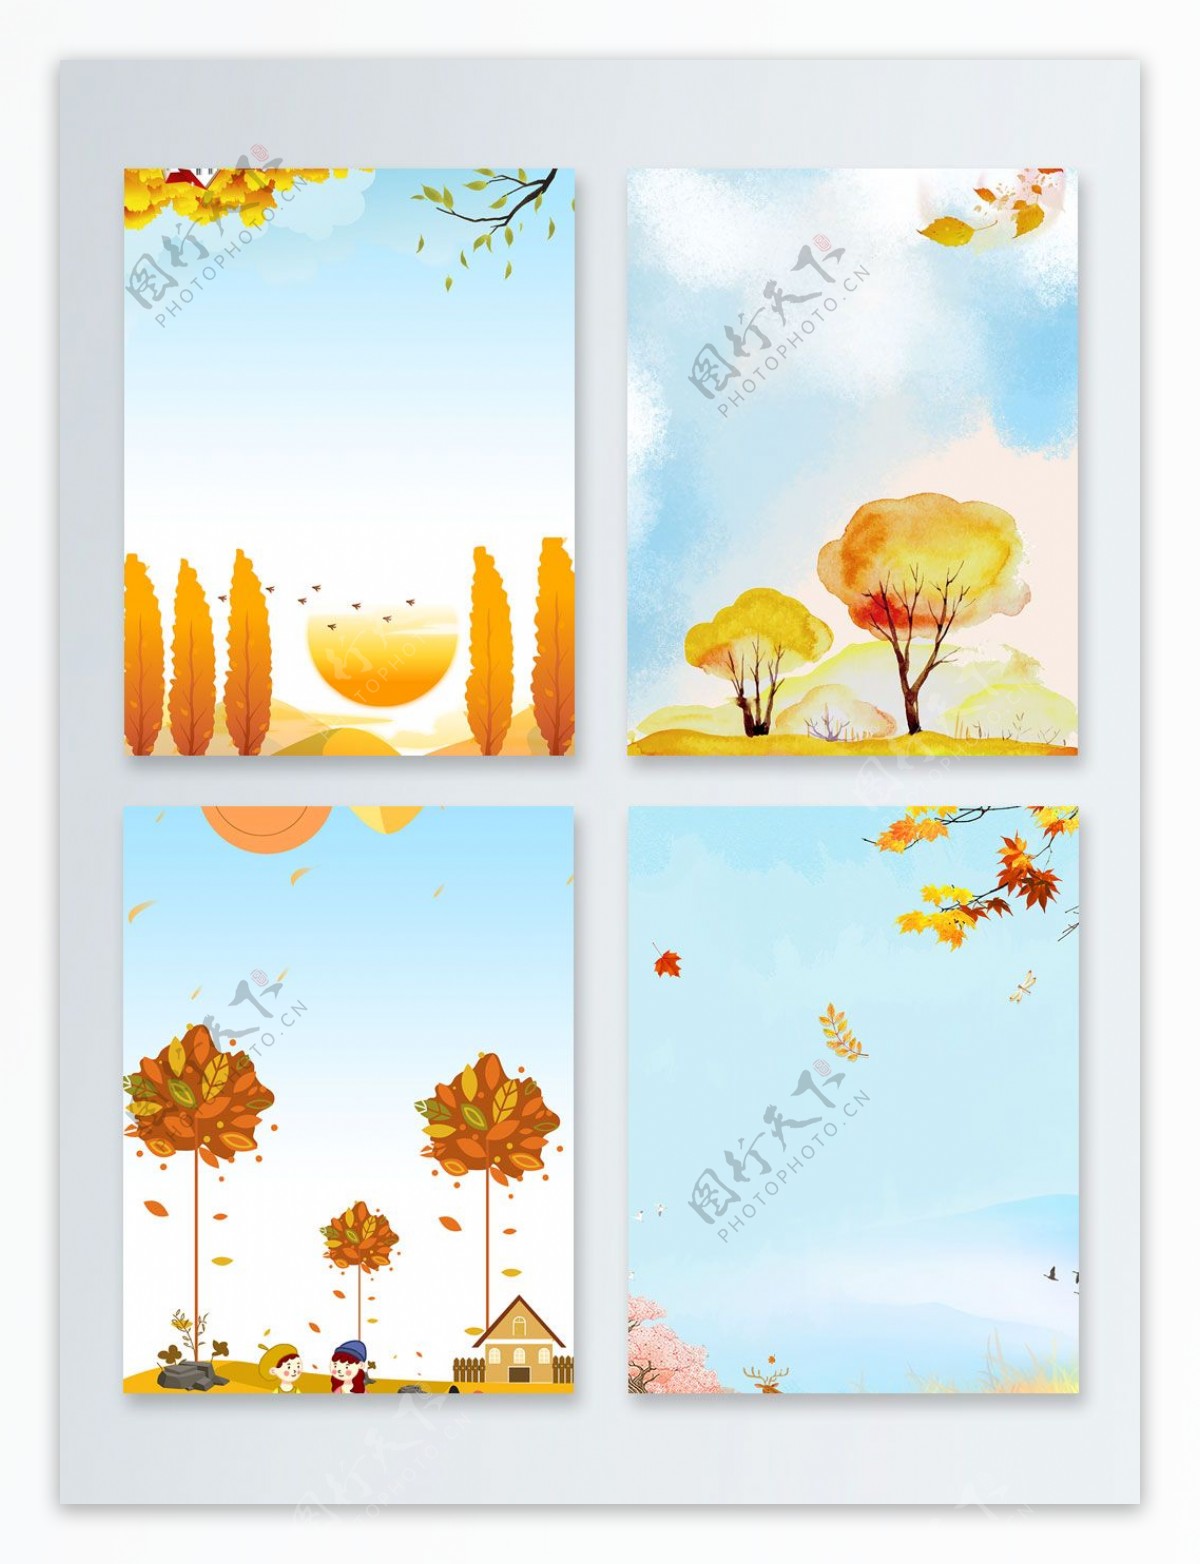 树木金黄秋季落叶广告背景图